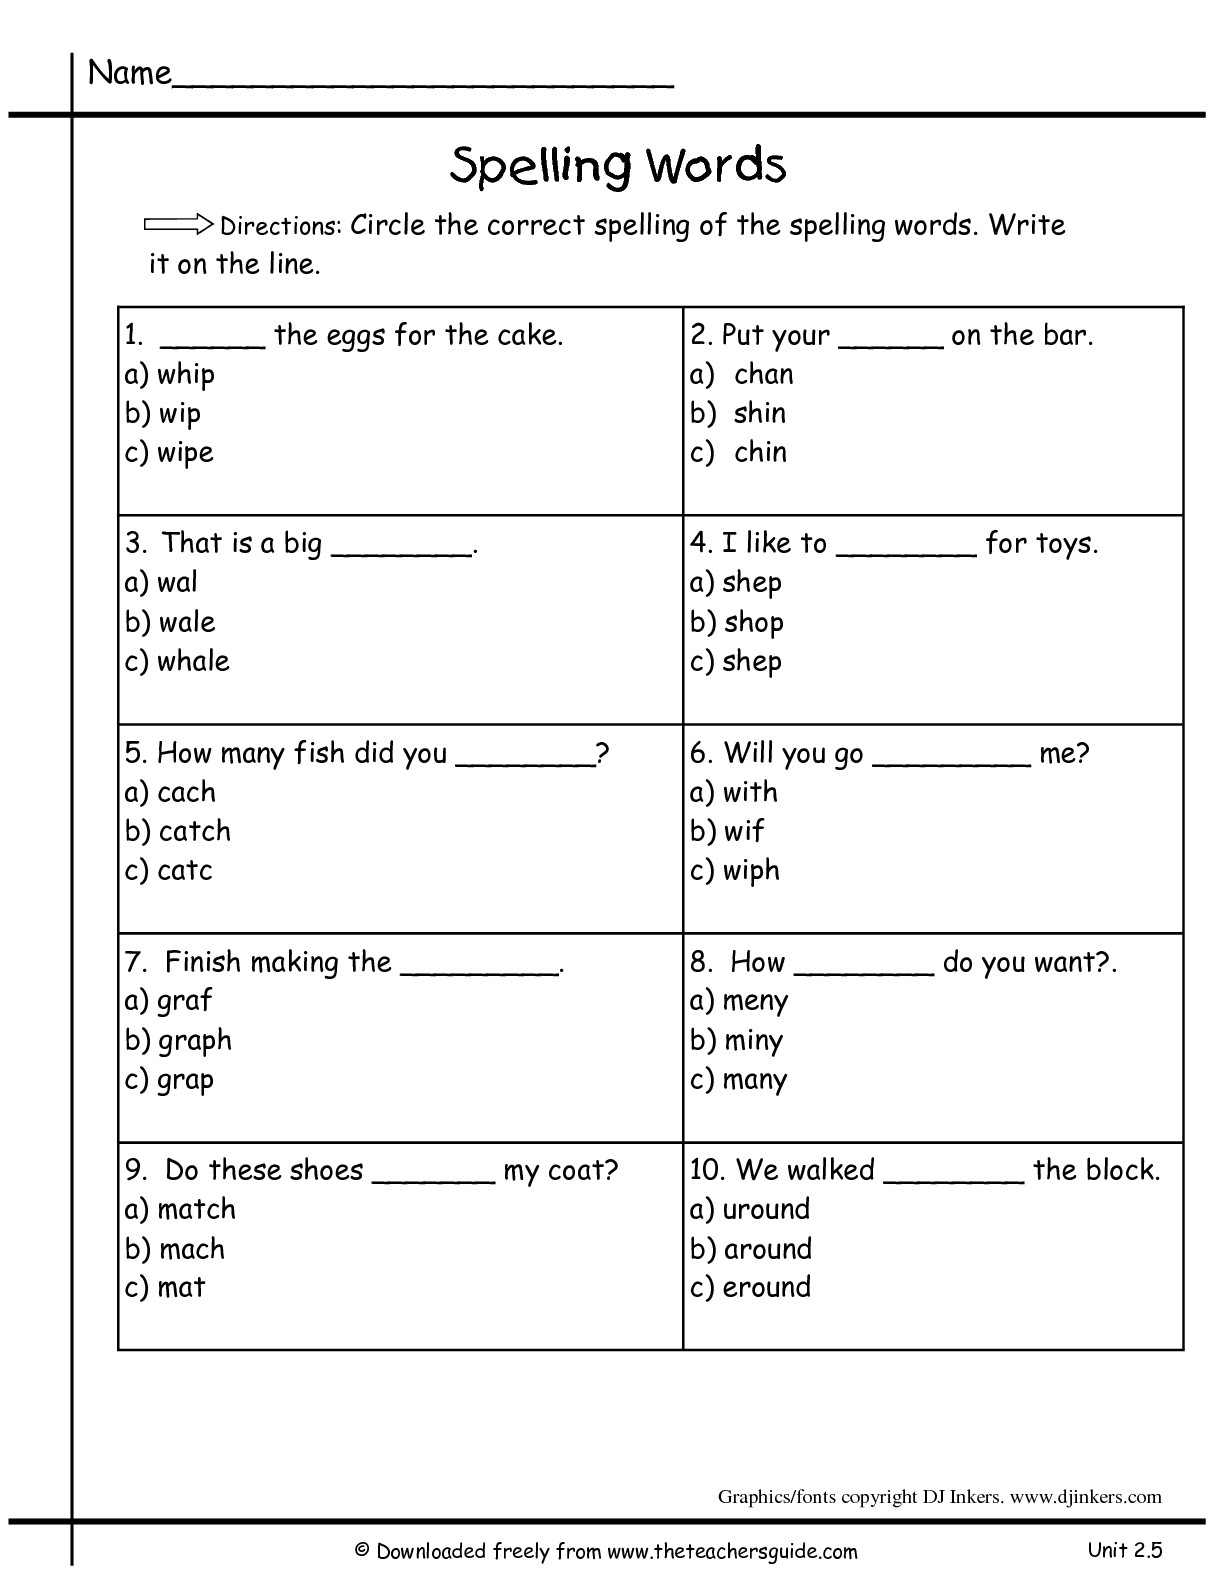 19 Best Images of First Grade Spelling Test Worksheets - 1st Grade ...